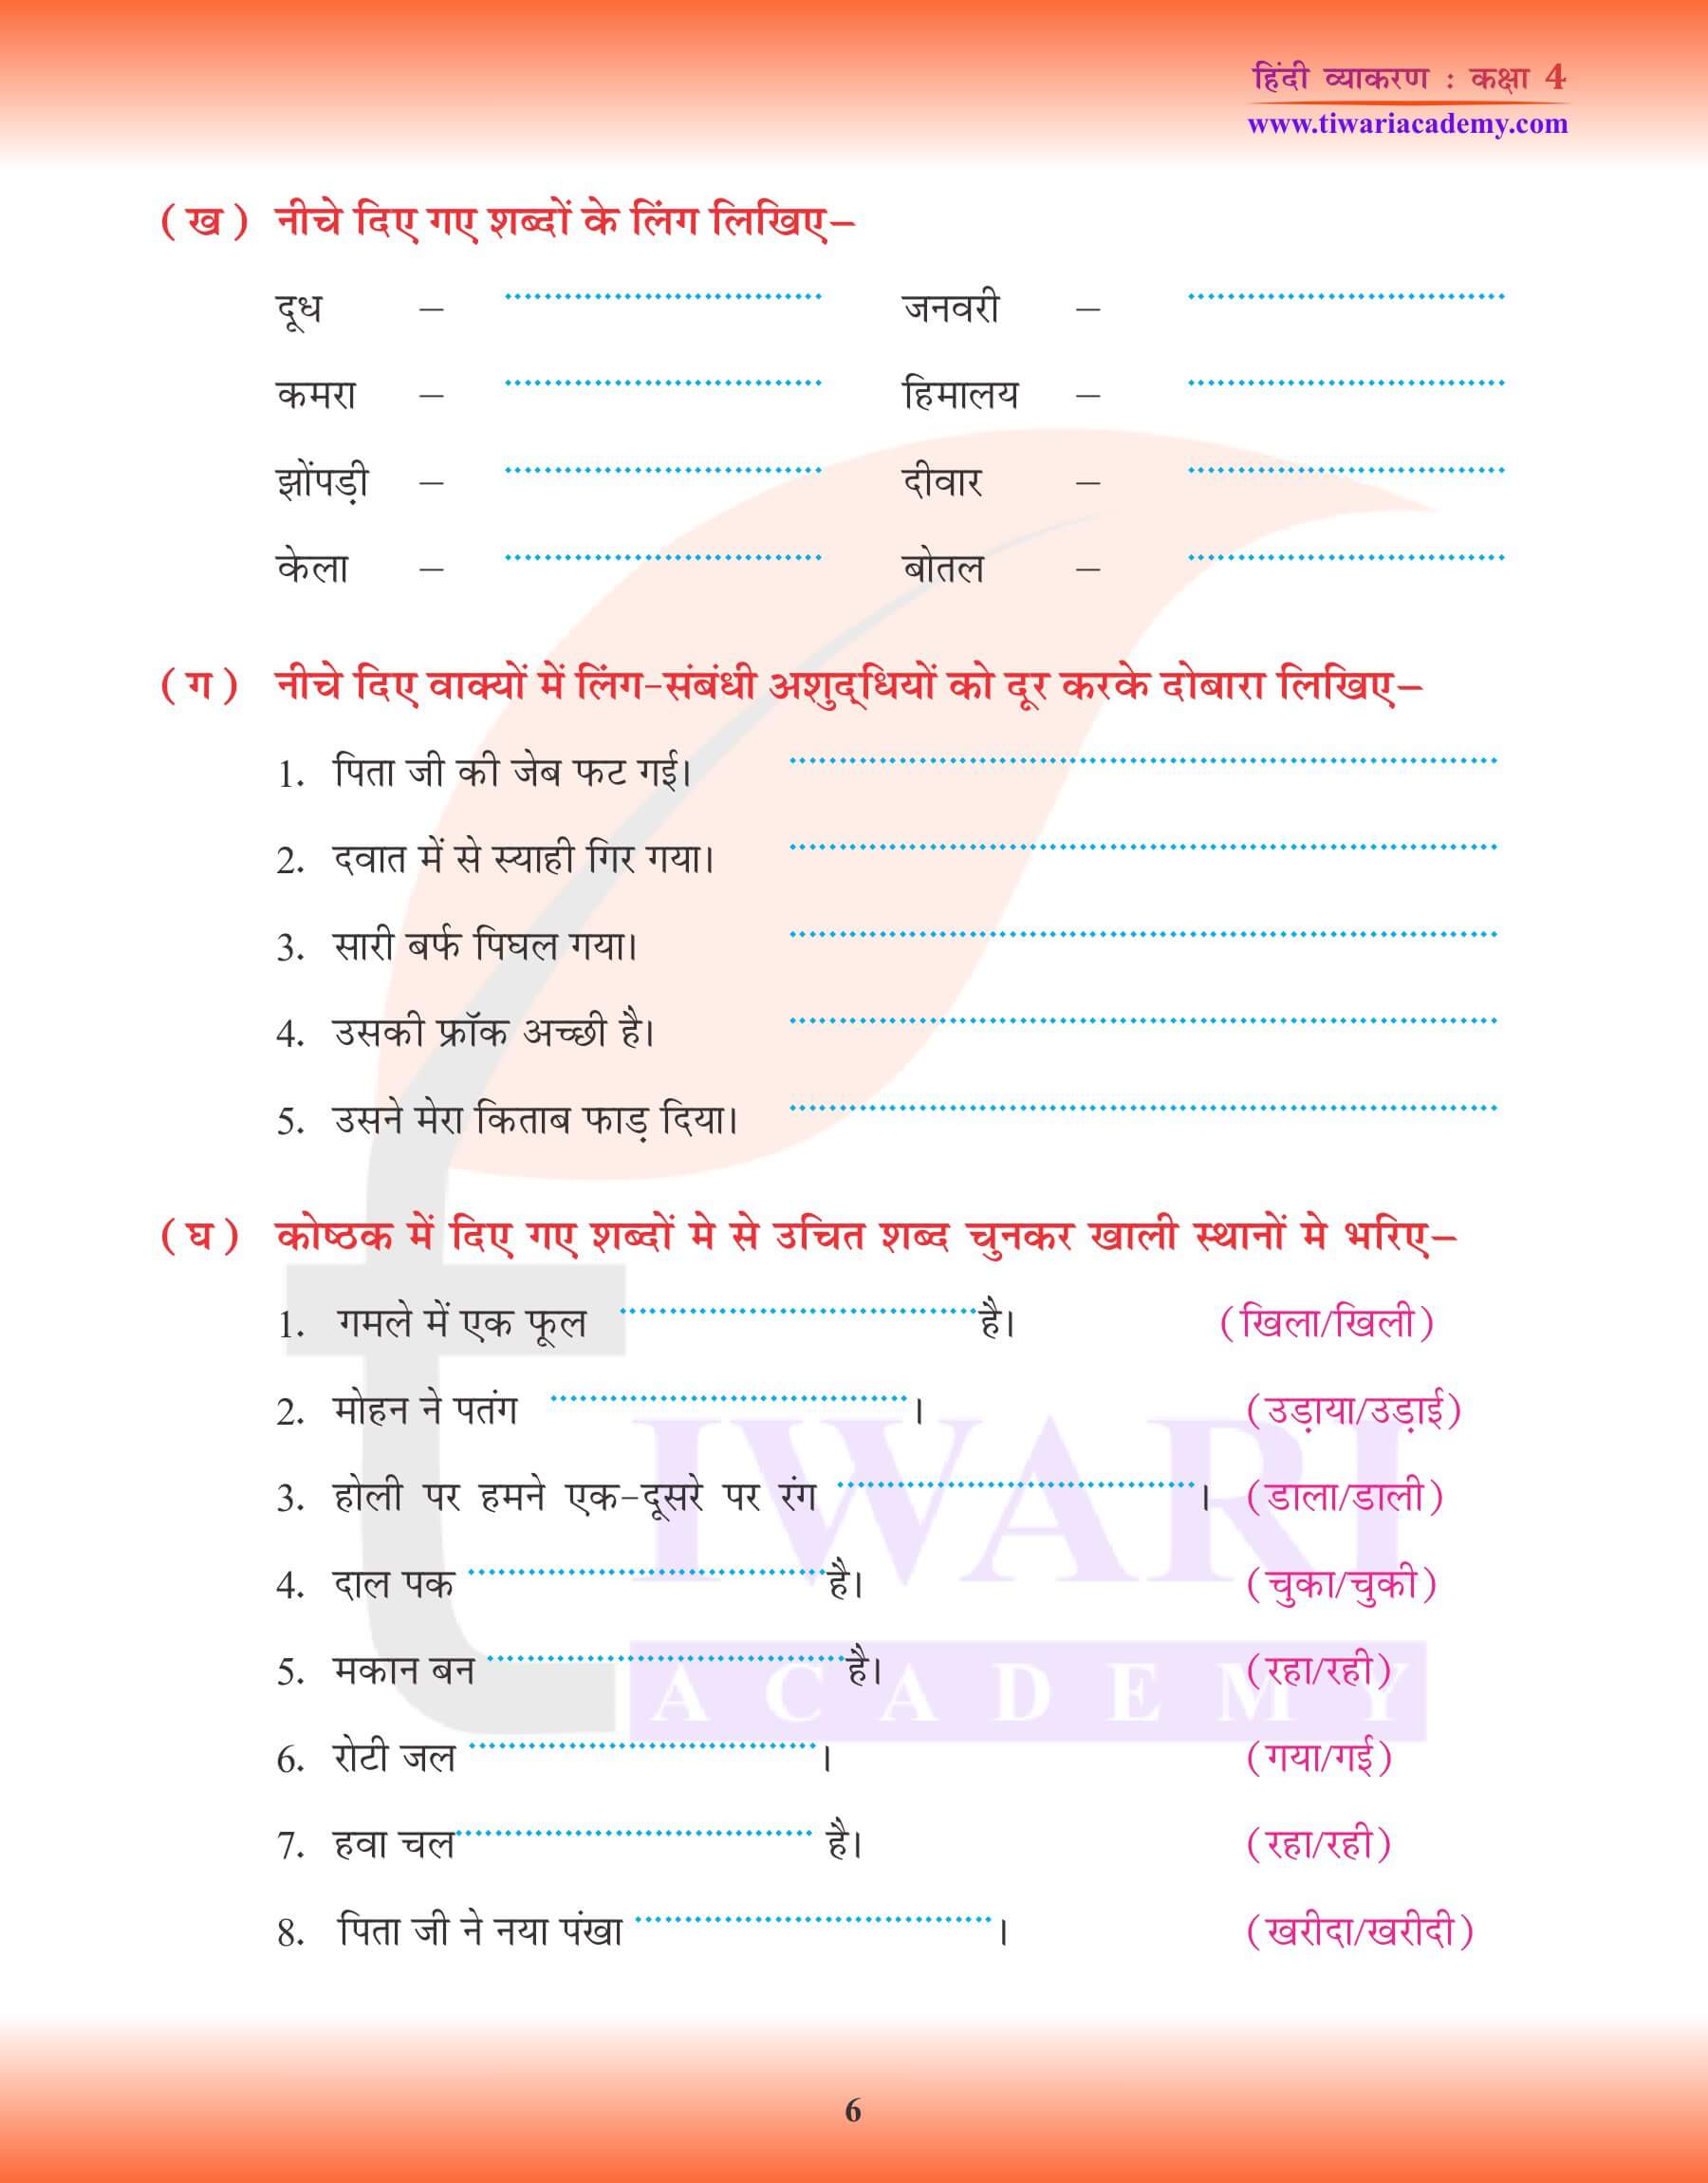 कक्षा 4 हिंदी व्याकरण में स्त्रीलिंग तथा पुल्लिंग के उदाहरण